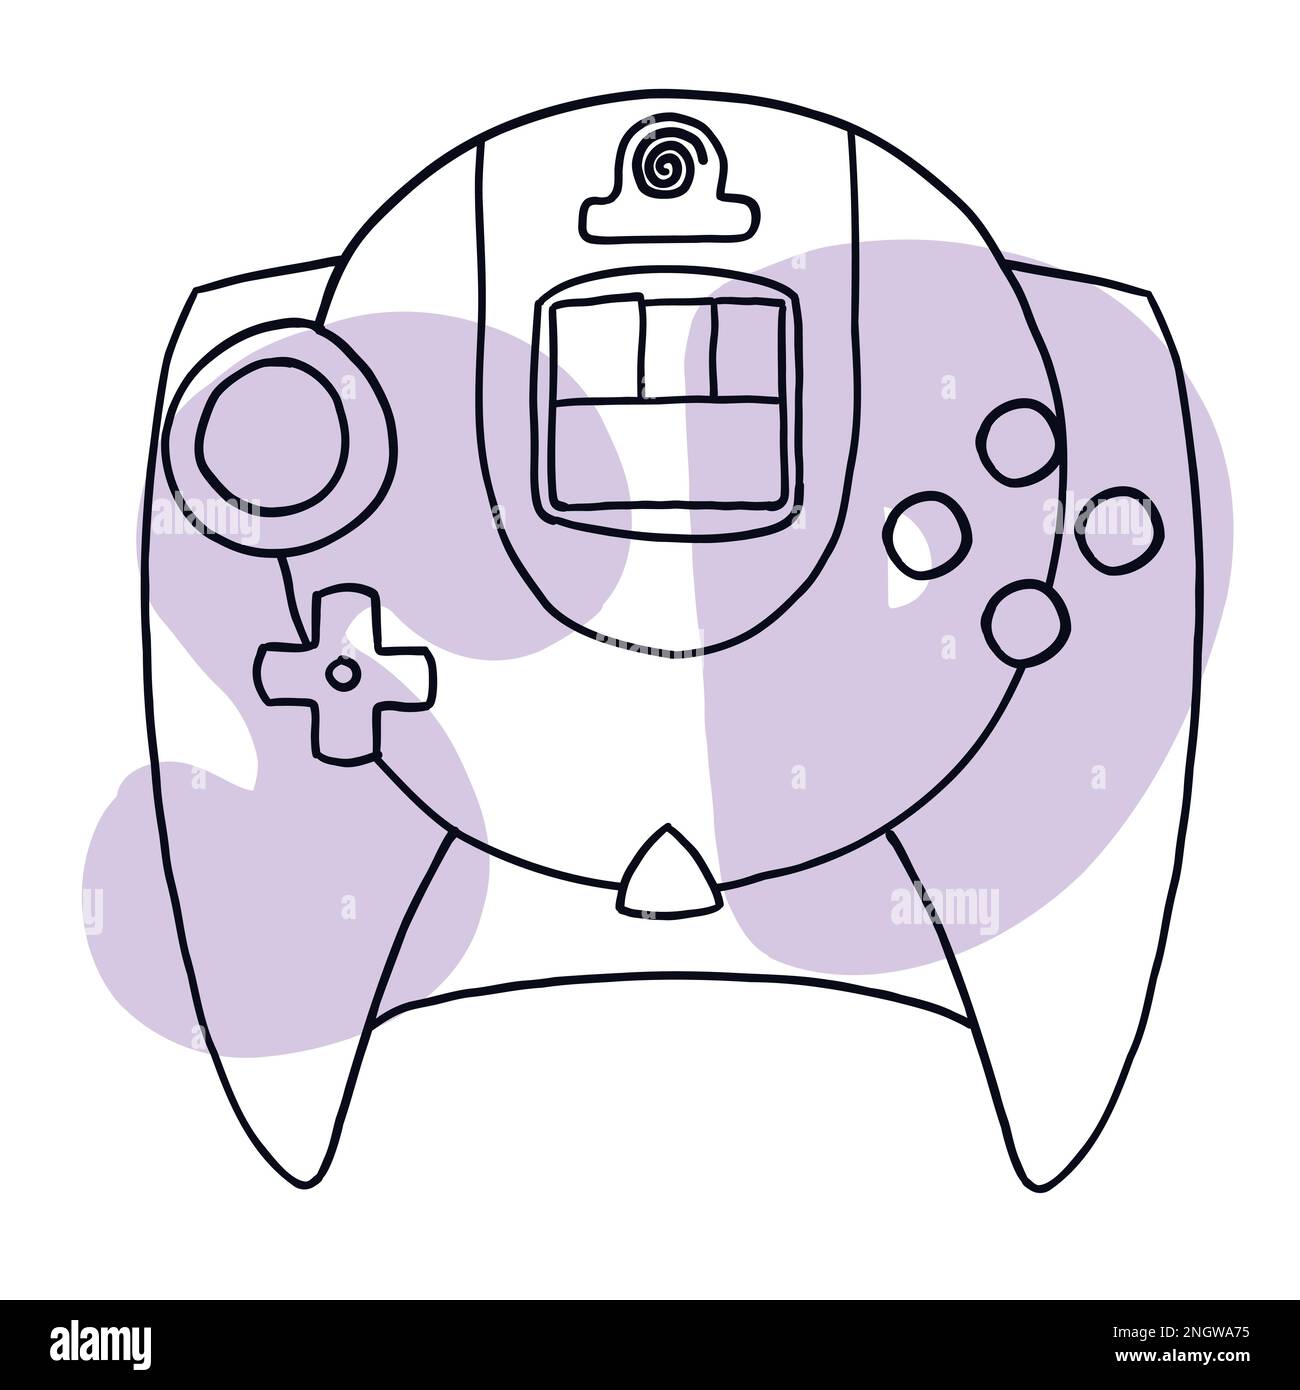 Console de jogos retrô ícones de joystick de videogame de desenho